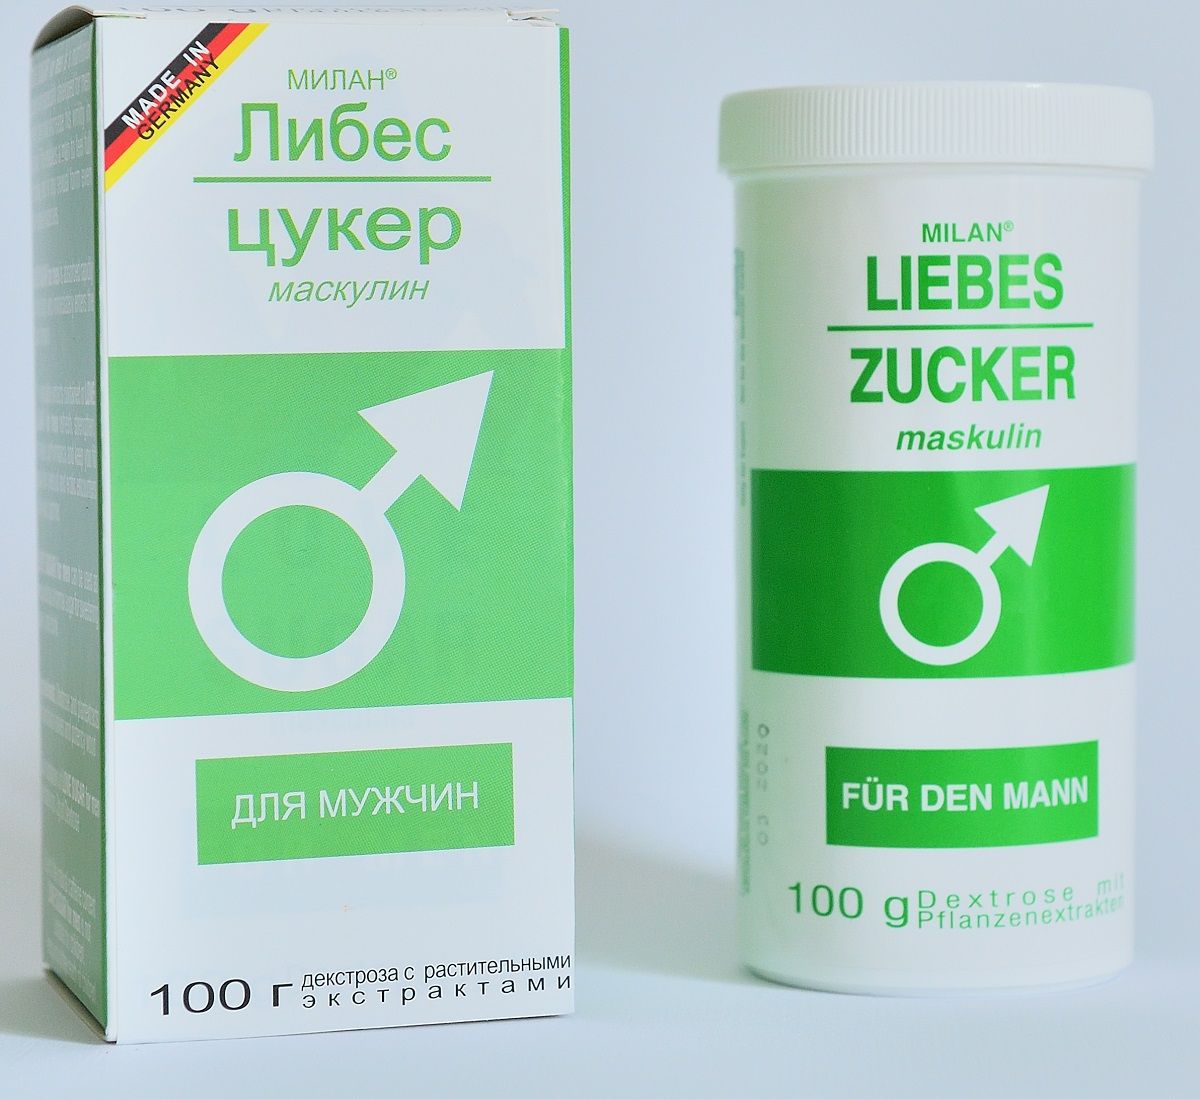 Сахар любви для мужчин Liebes-Zucker maskulin - 100 гр. - фото 143164